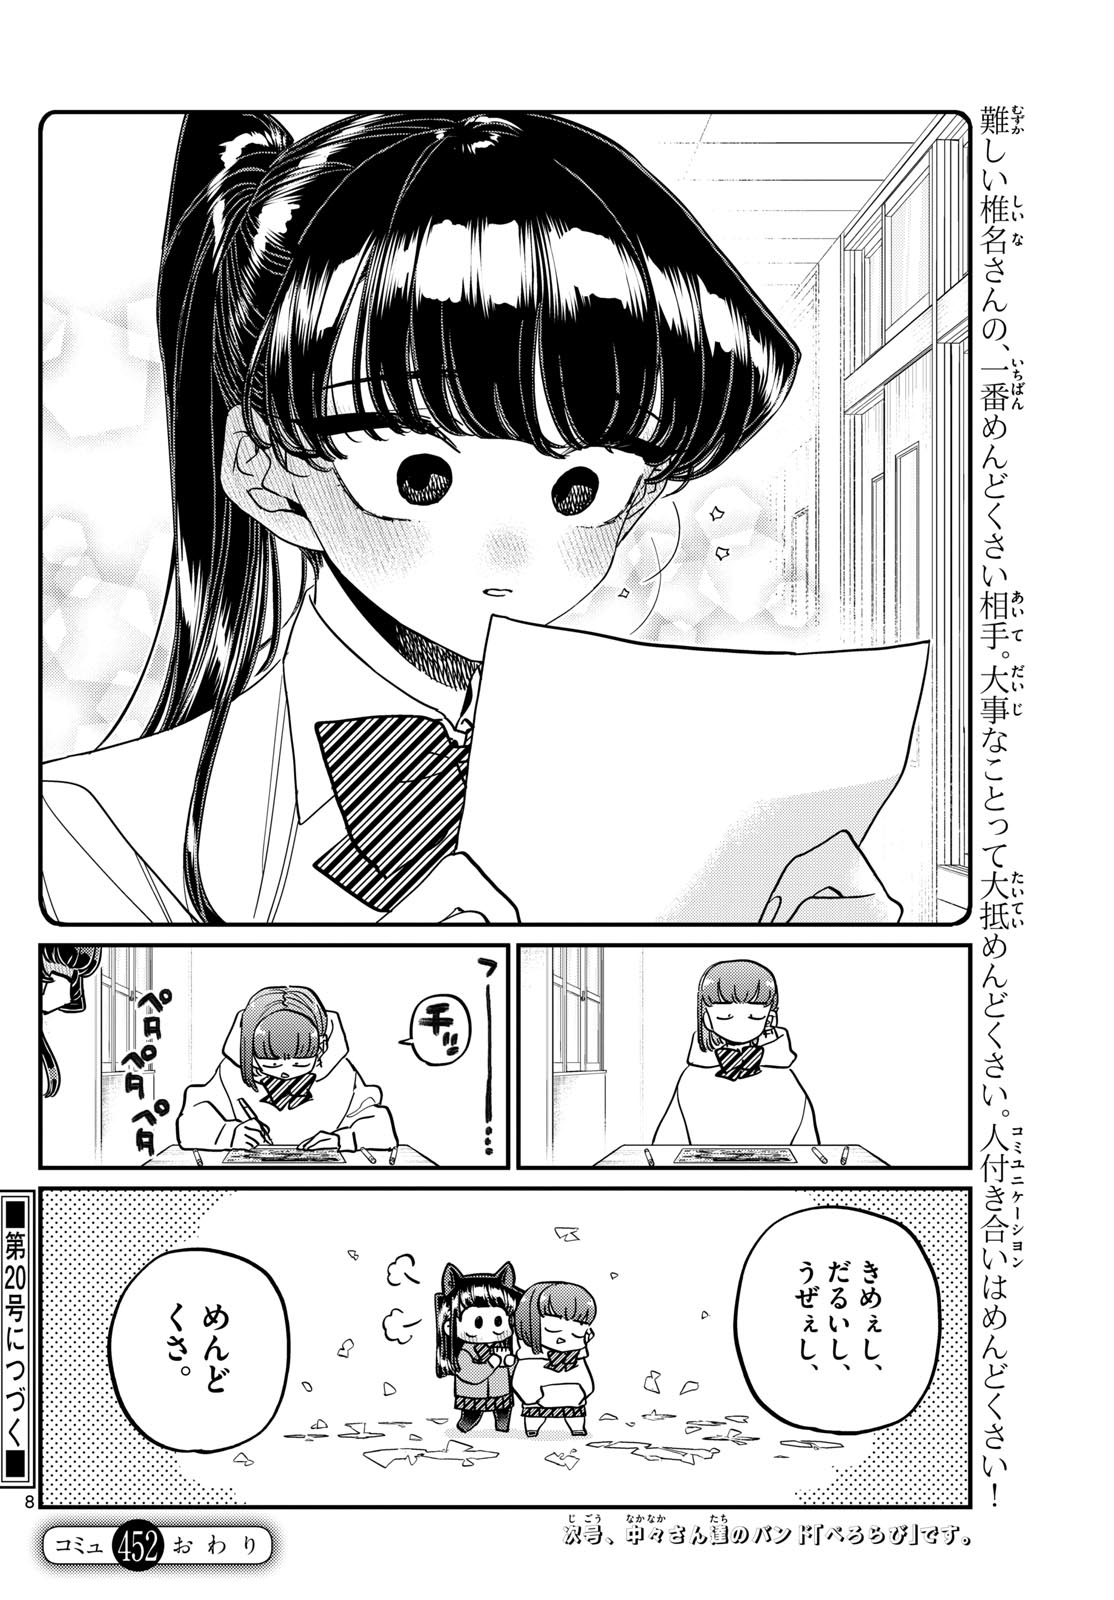 Komi-san wa Komyushou Desu - Chapter 452 - Page 8